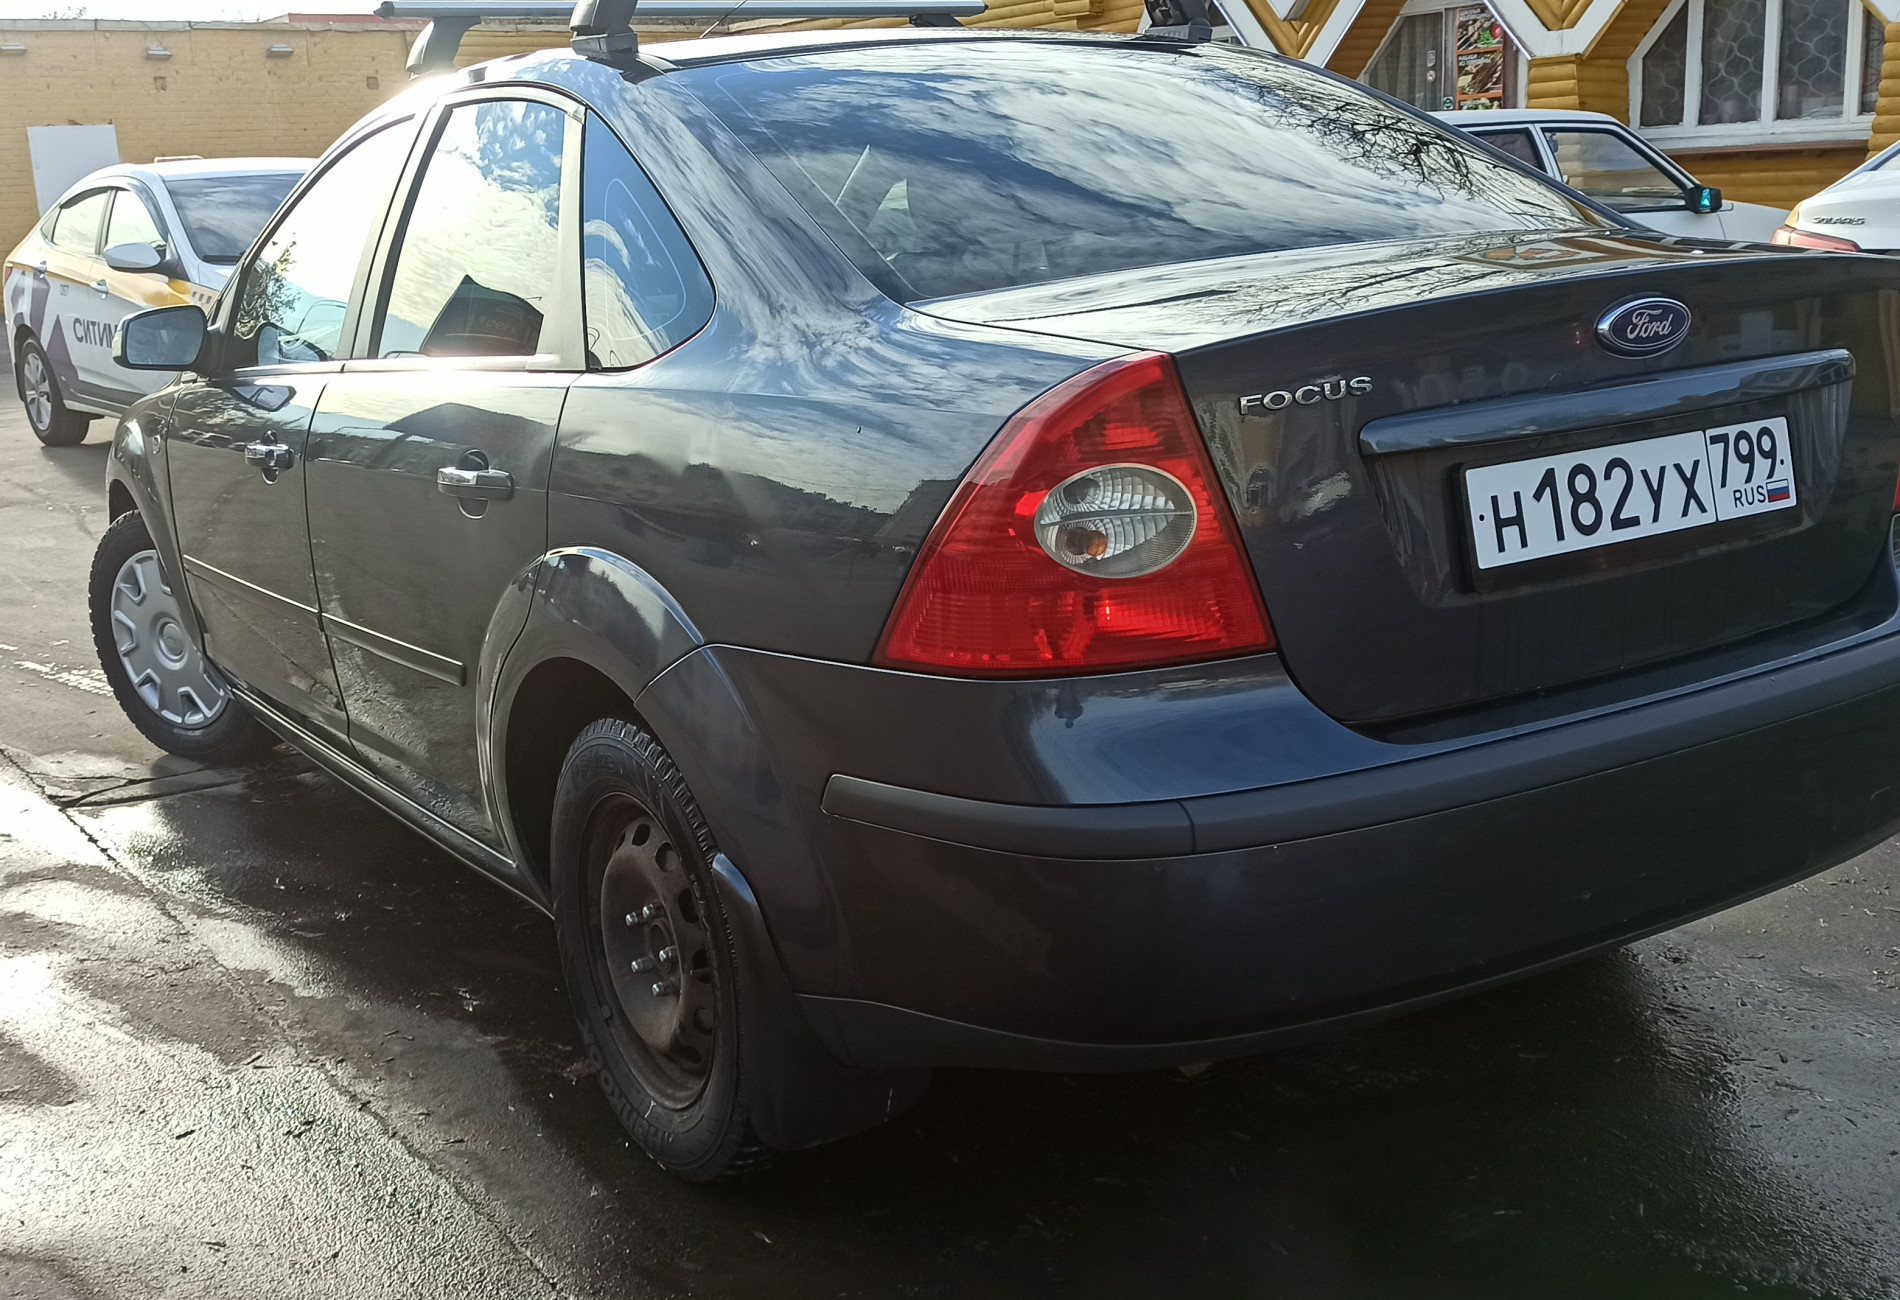 Аренда ford focus эконом класса 2007 года в городе Москва Люблино от 1800 руб./сутки, передний привод, двигатель: бензин, объем 1.6 литров, ОСАГО (Мультидрайв), без водителя, недорого, вид 4 - RentRide